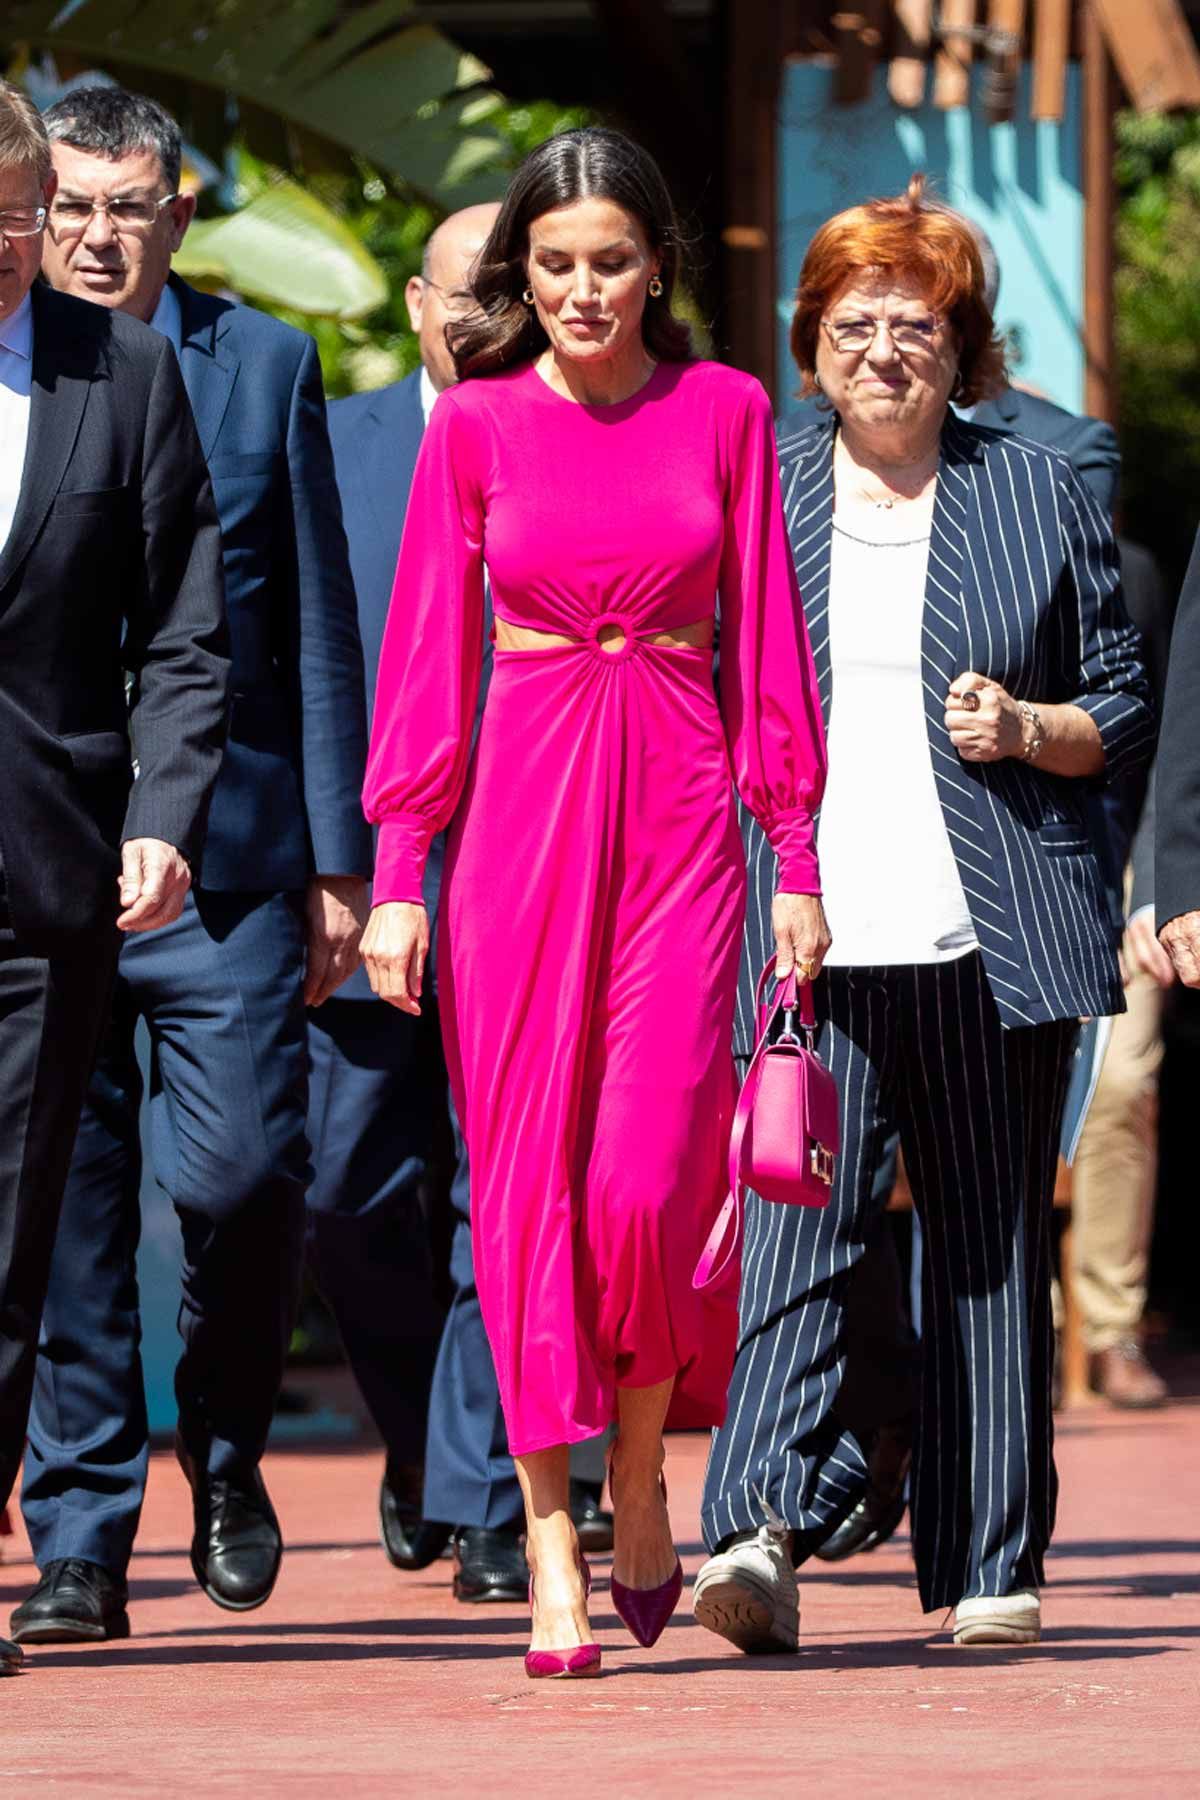 La reina Letizia estrena vestido 'cut out' (de la firma Cayro) y luce sus abdominales en Valencia